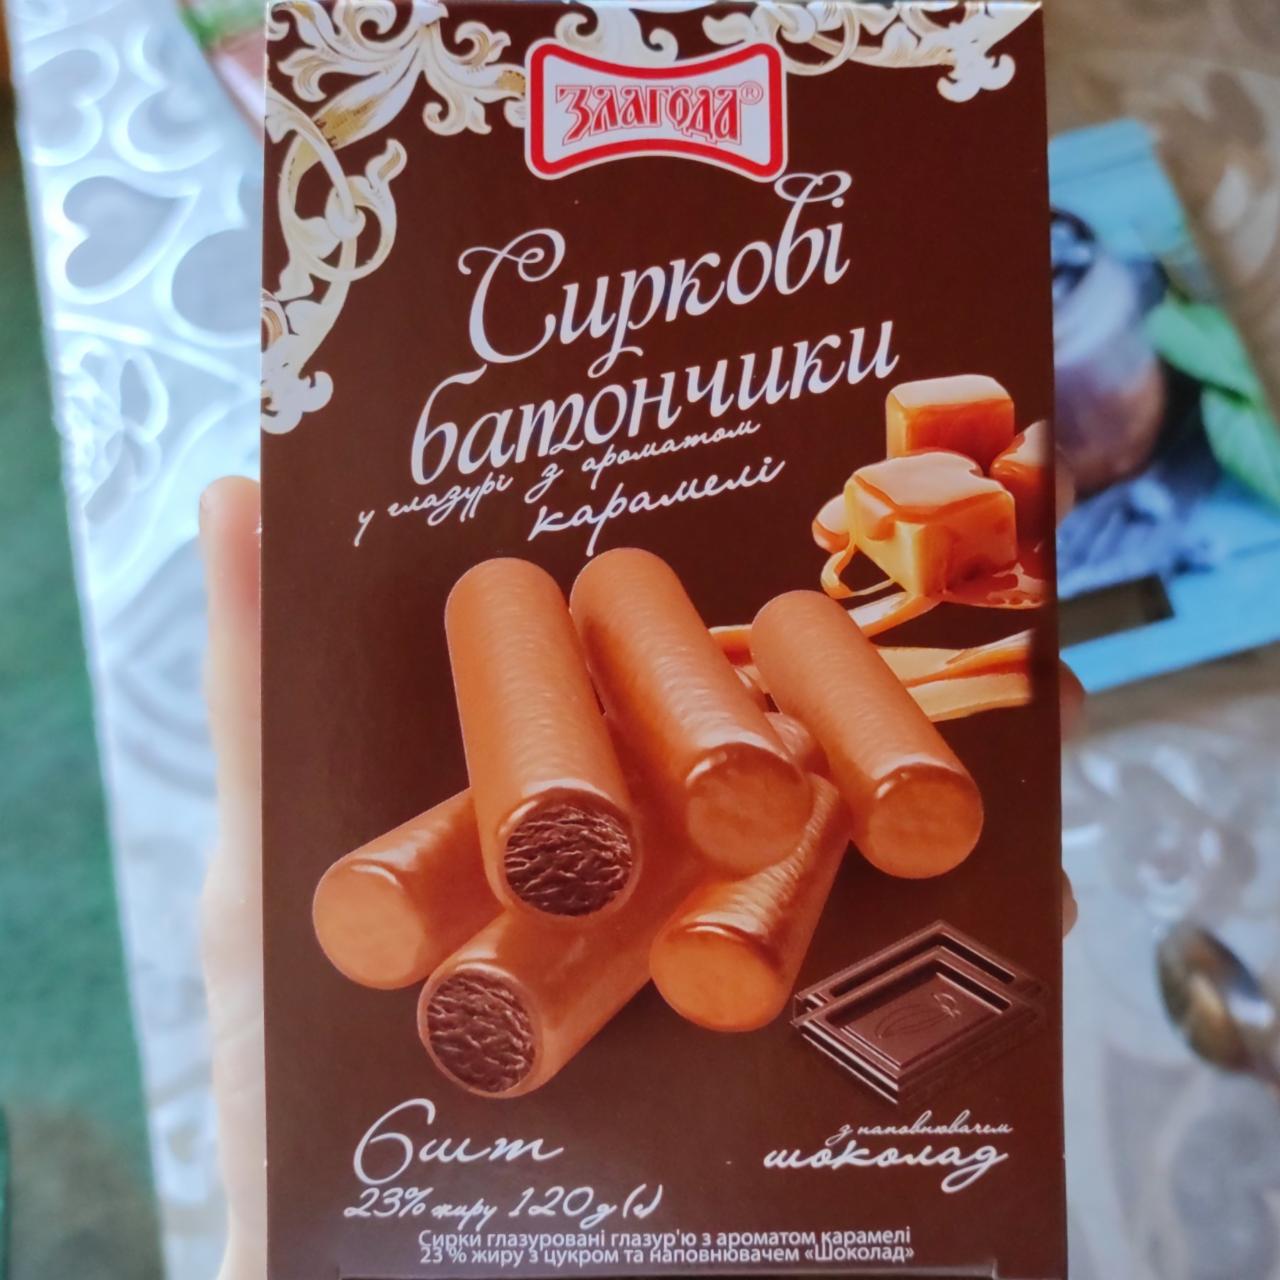 Фото - Творожные батончики в шоколадной глазури с ароматом карамели и шоколадным наполнителем Злагода